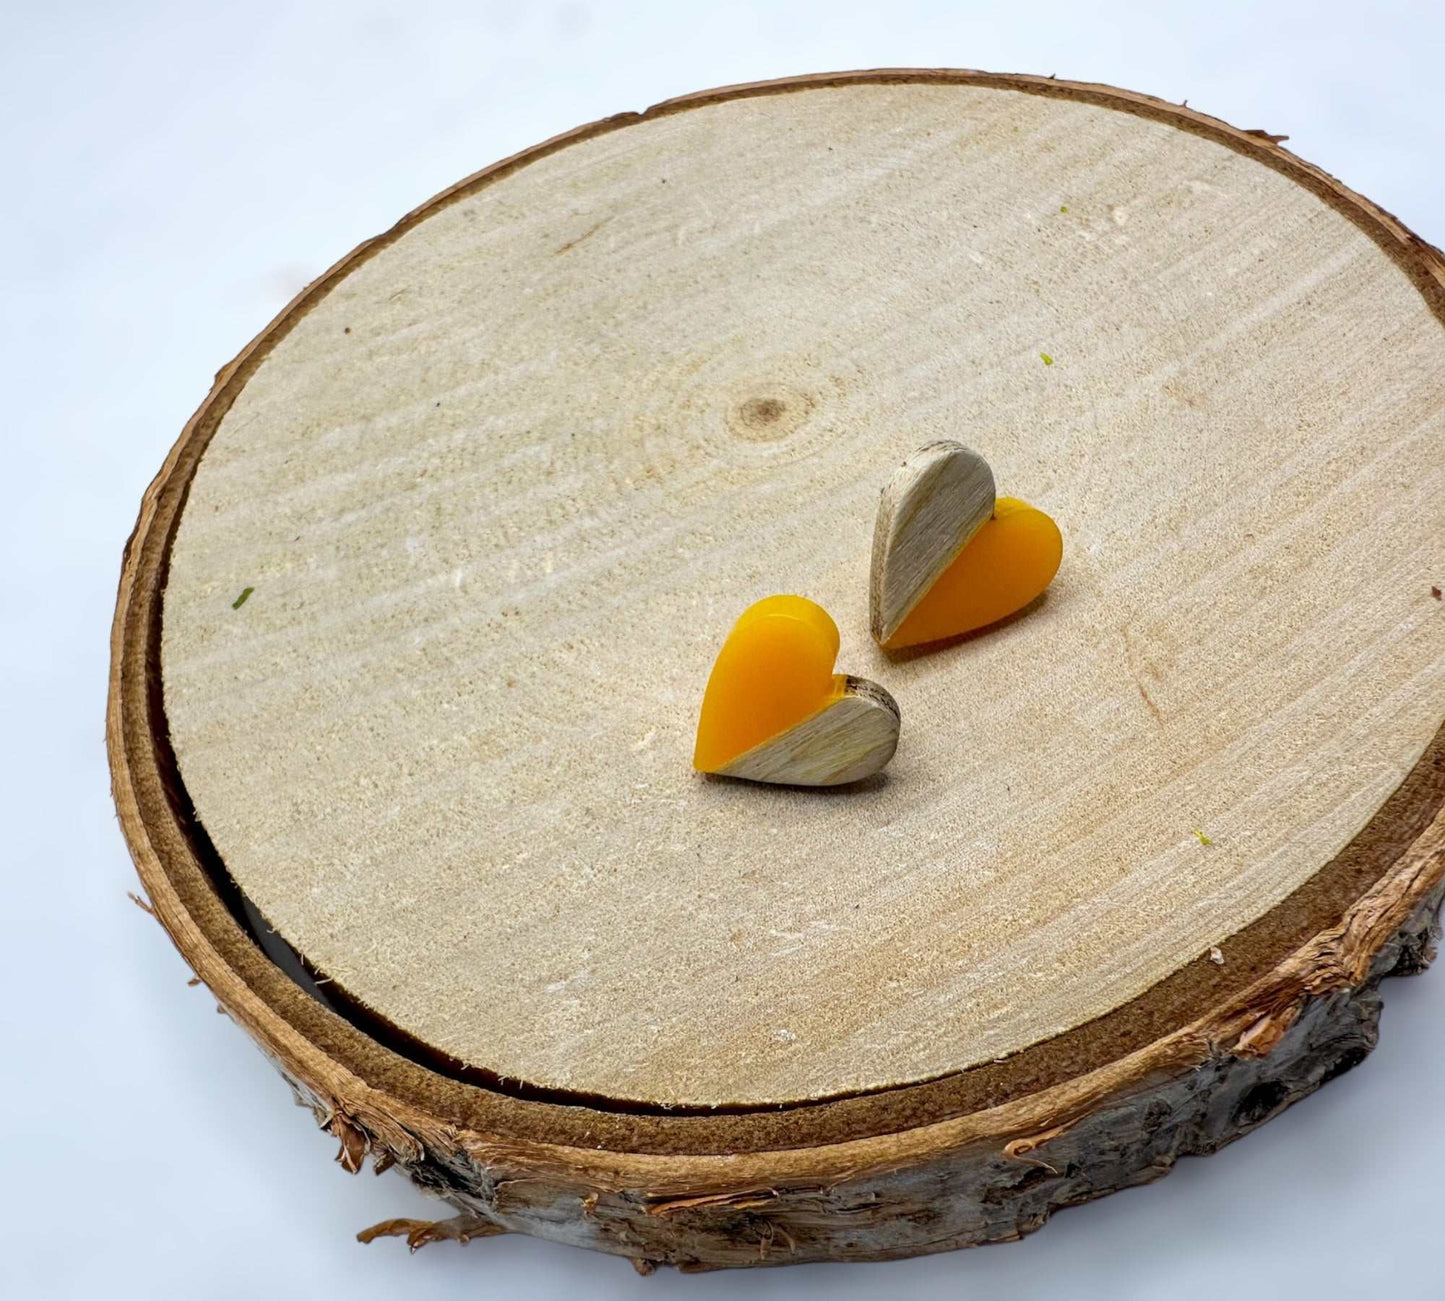 Heartfelt Boho Bliss: Whimsical Wood & Yellow Resin Heart Earrings